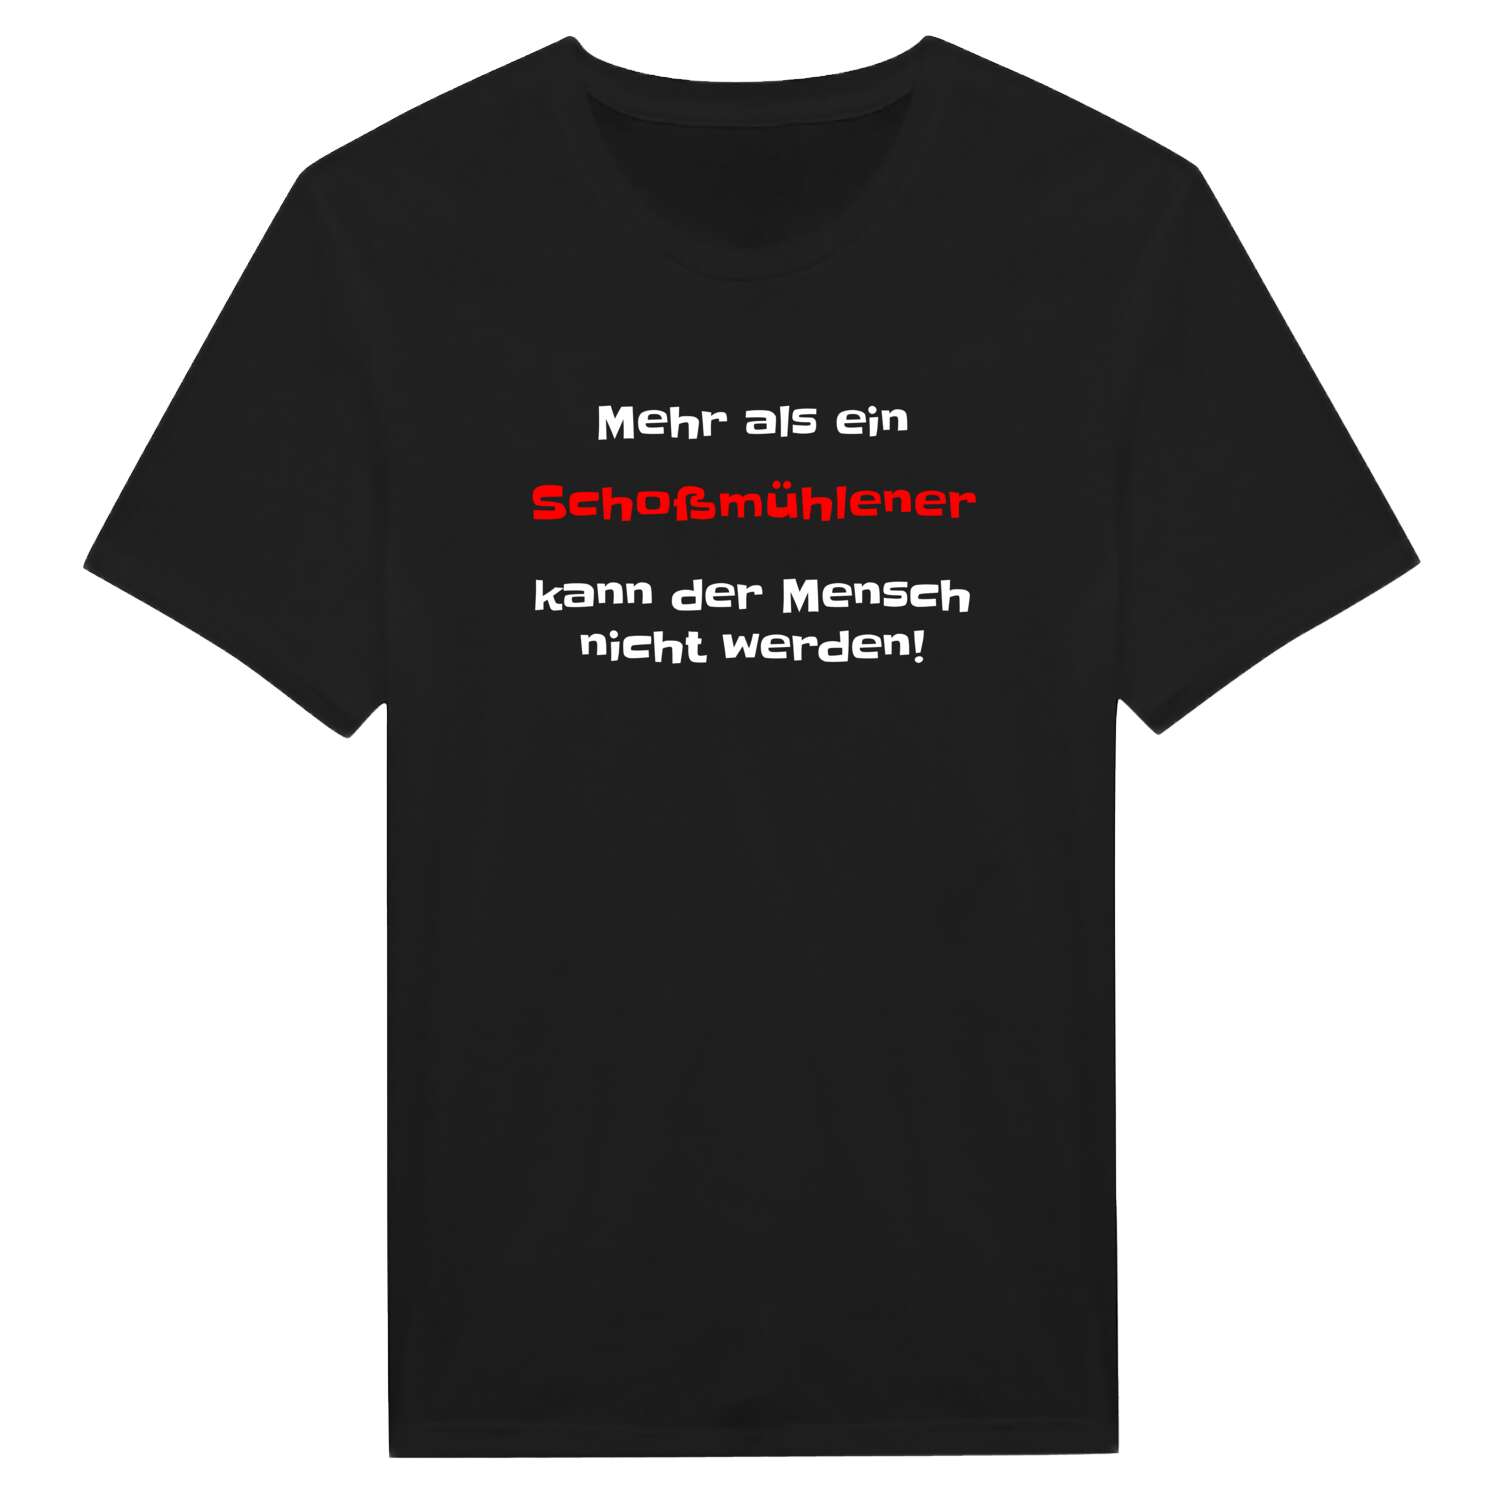 Schoßmühle T-Shirt »Mehr als ein«